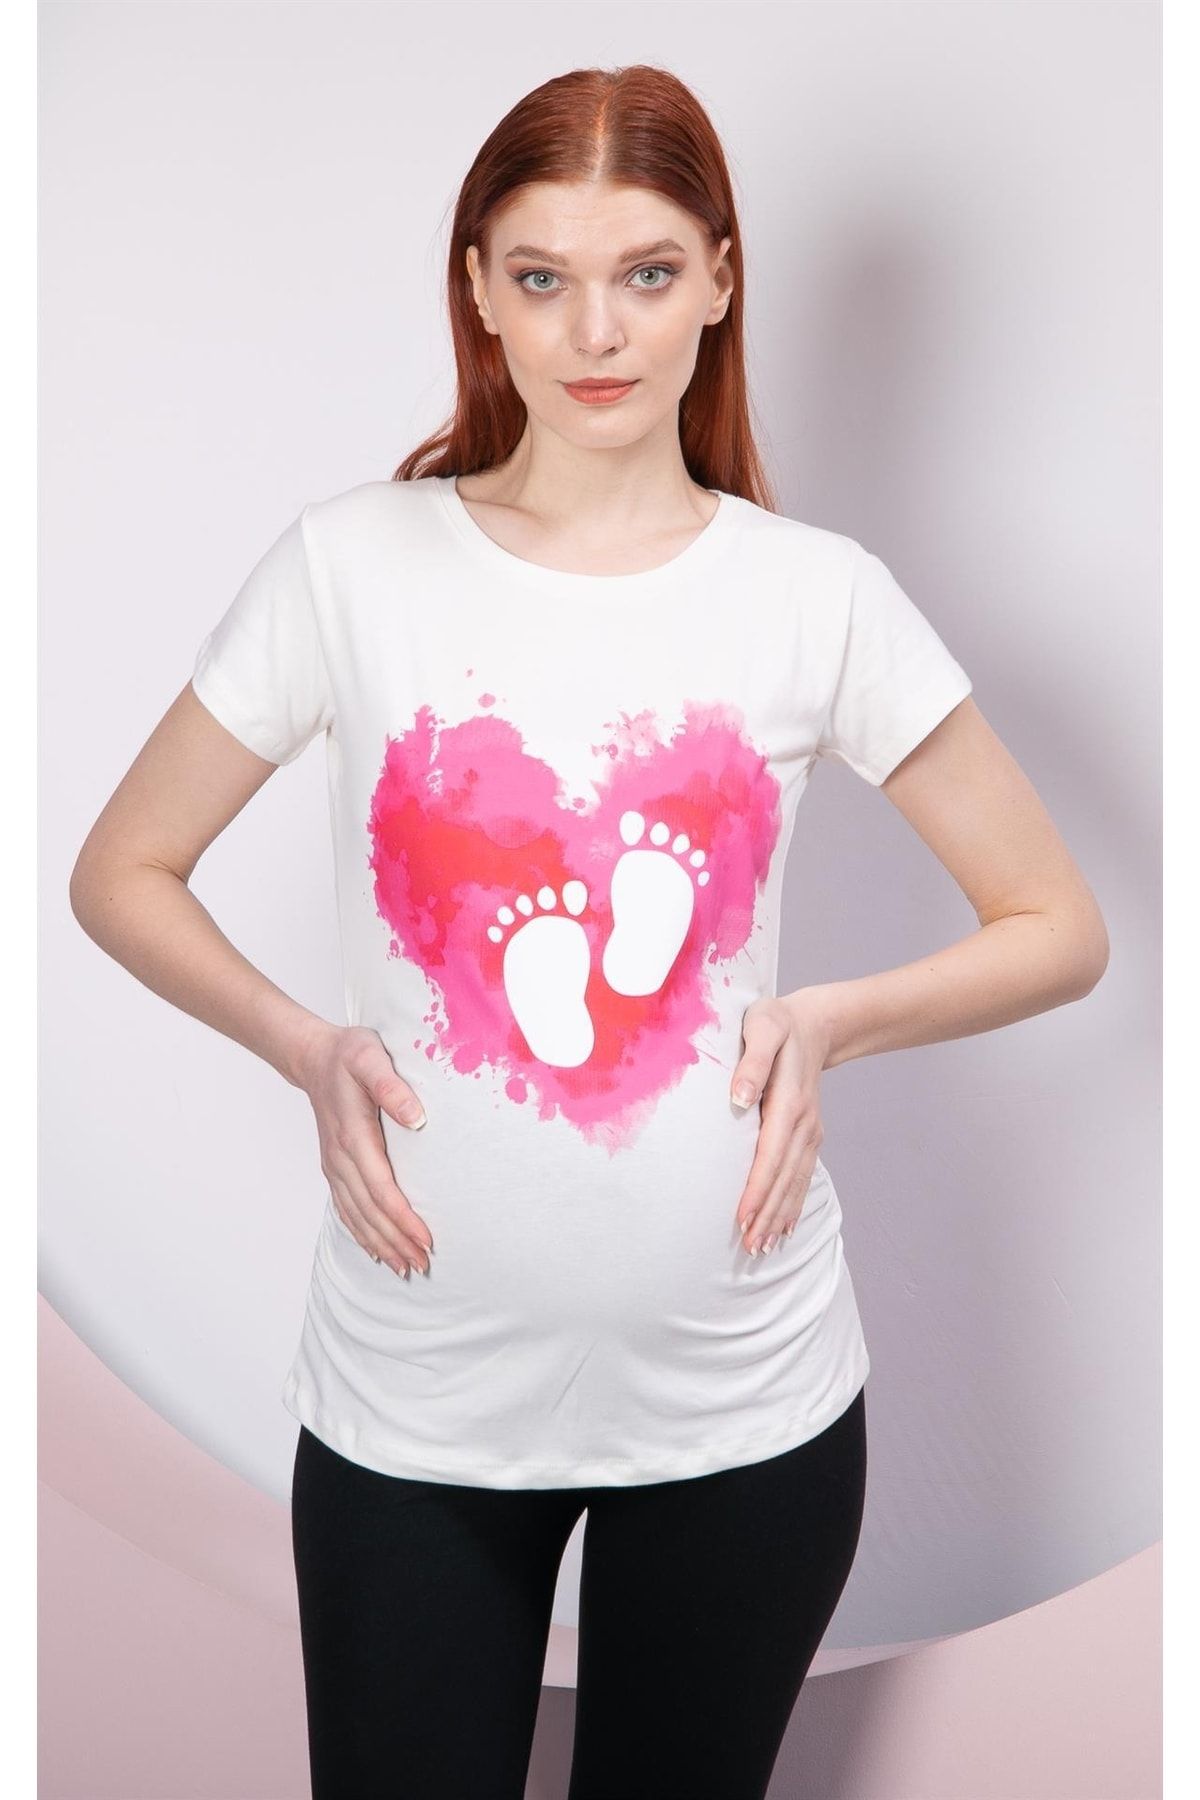 Görsin Hamile Gör&sin Kalp Üstü Ayak Izi Baskılı Beyaz Hamile Tişört